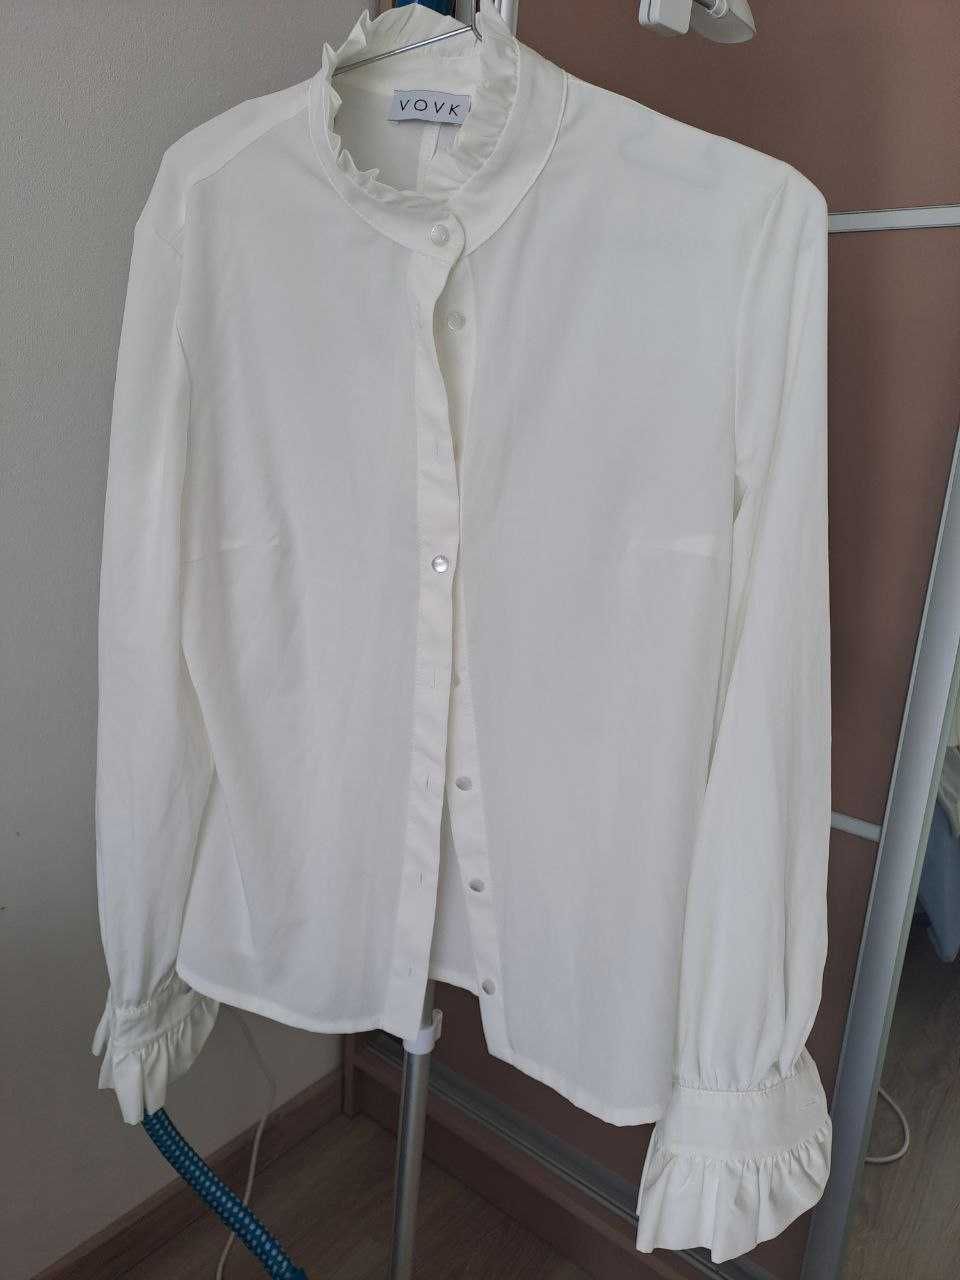 Пряма блуза з коміром стійкою молочного кольору vovk S